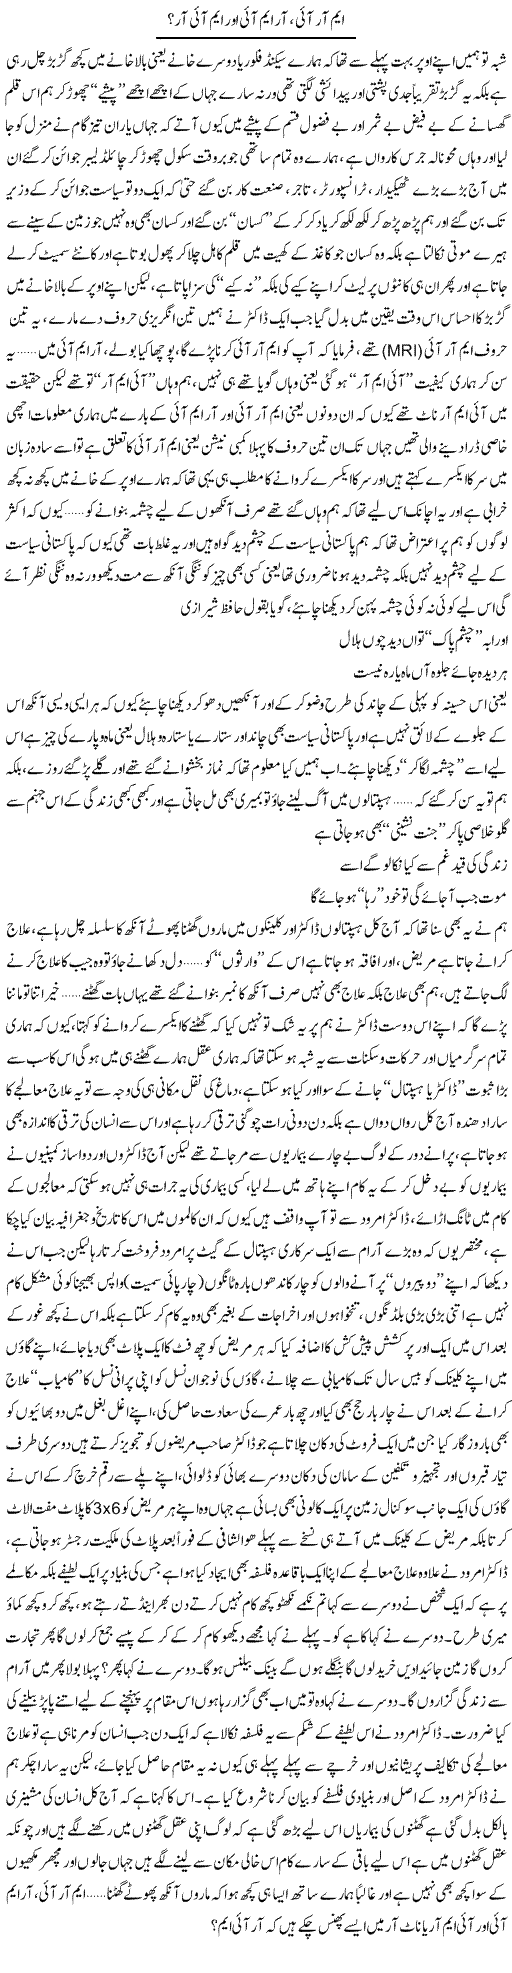 MRI, RMI aur MIR? | Saad Ullah Jan Barq | Daily Urdu Columns